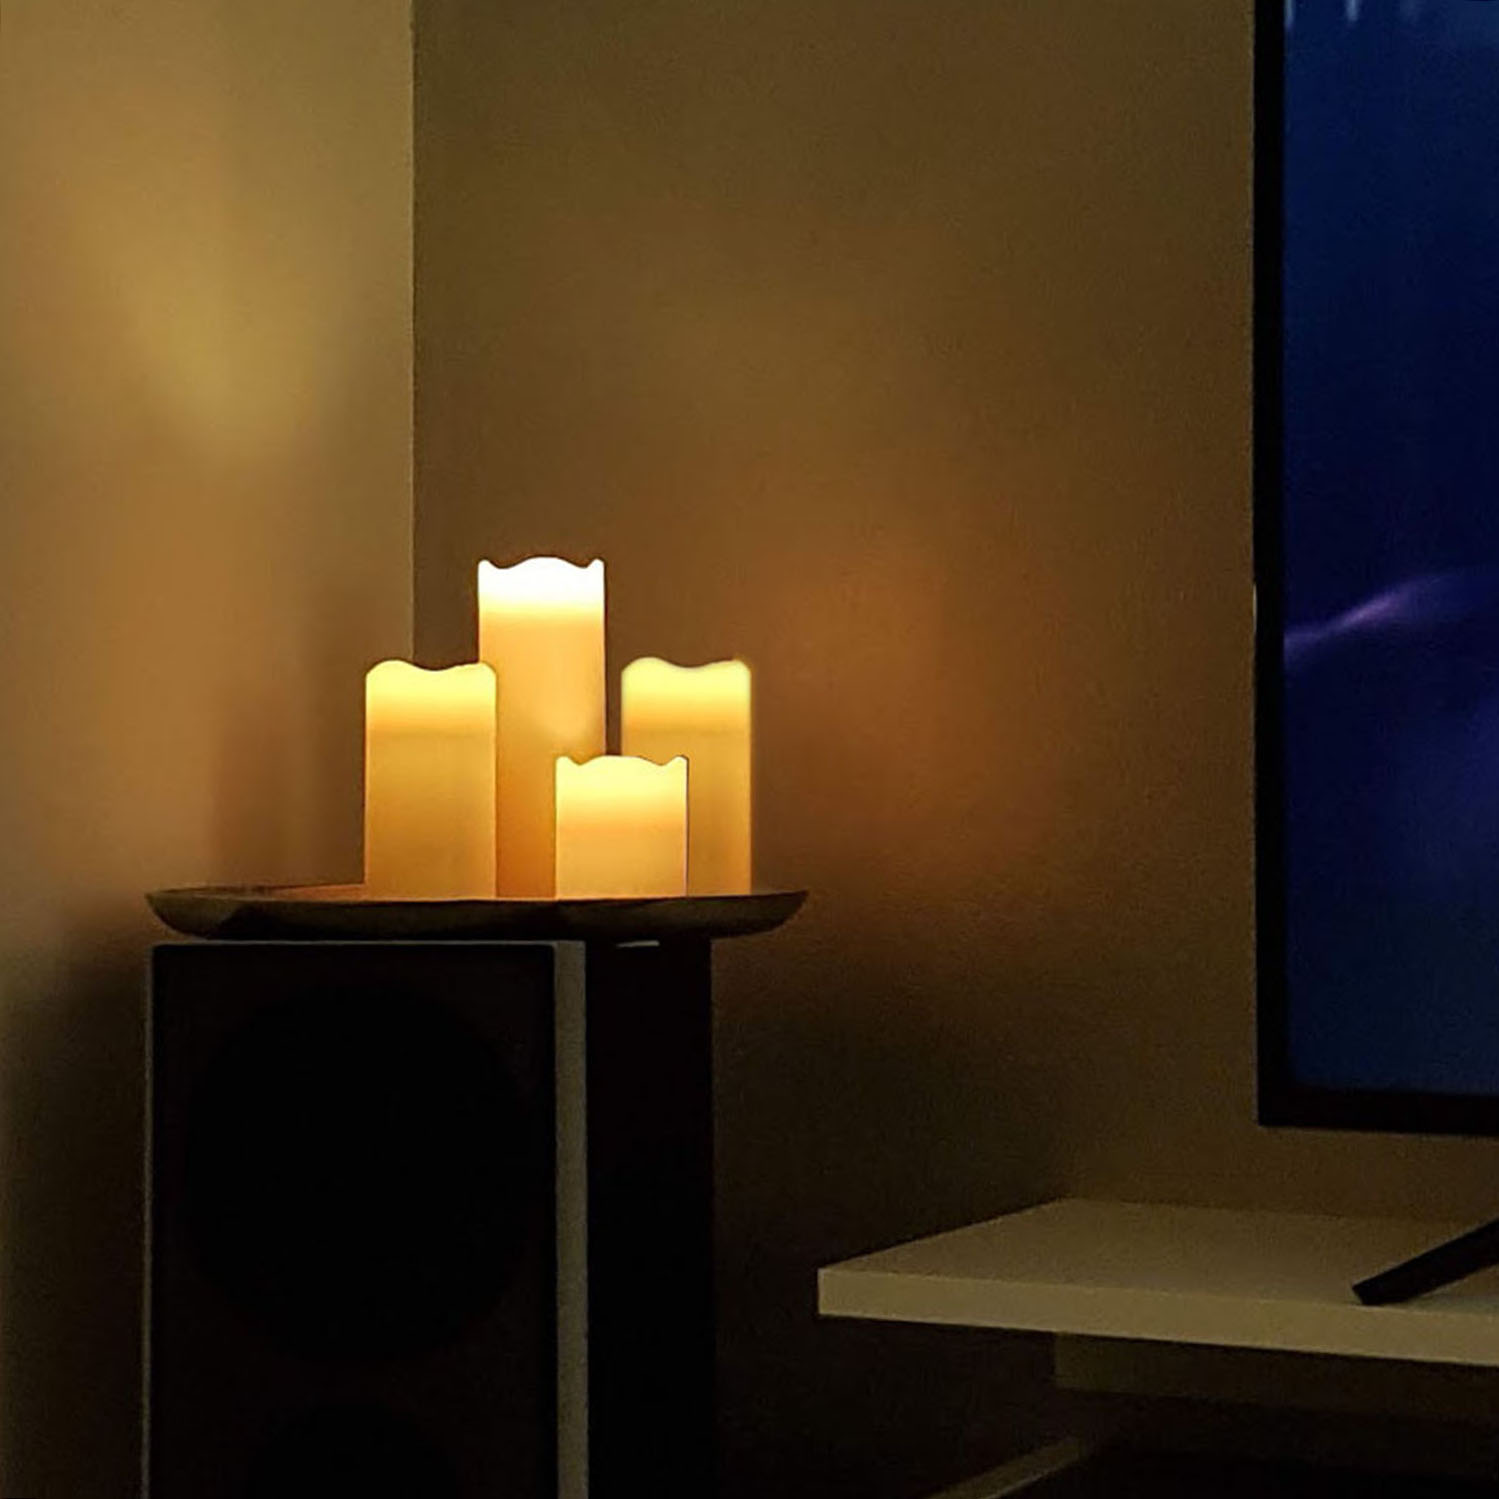 X4-LIFE LED Kerzen 4er-Set mit Fernbedienung, inkl. Batterie, täuschend echt flackernde Flamme, Kerzen 10cm, 2x 13cm, 15cm